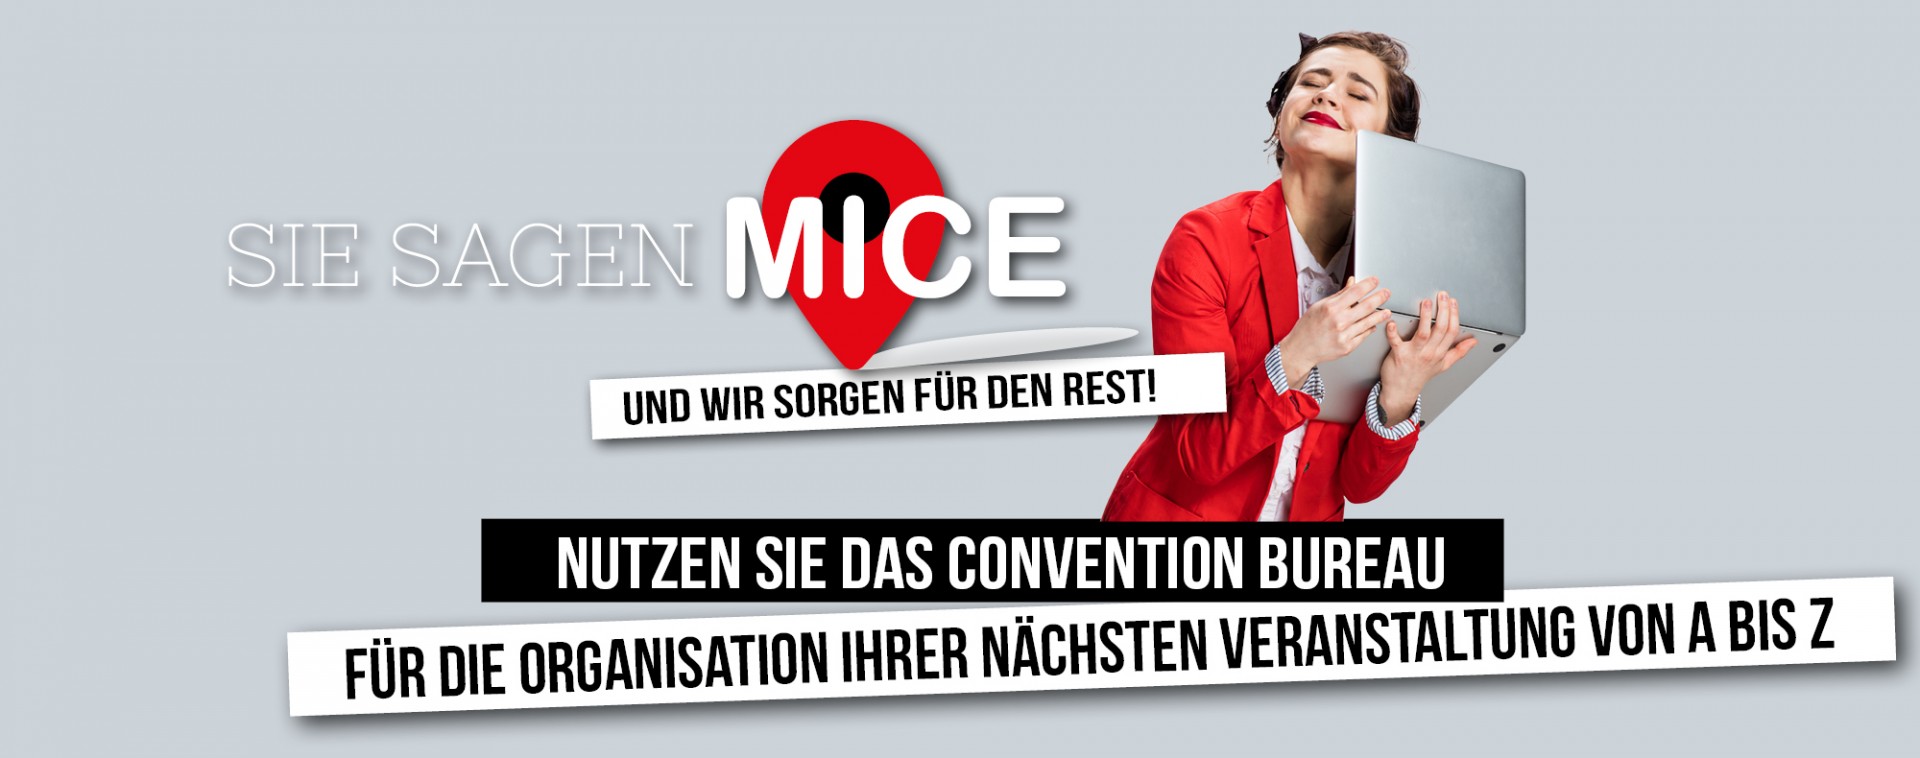 Sie Sagen MICE - Ihre Veranstaltung von A bis Z - Liège-Spa Businessland | © Getty Images